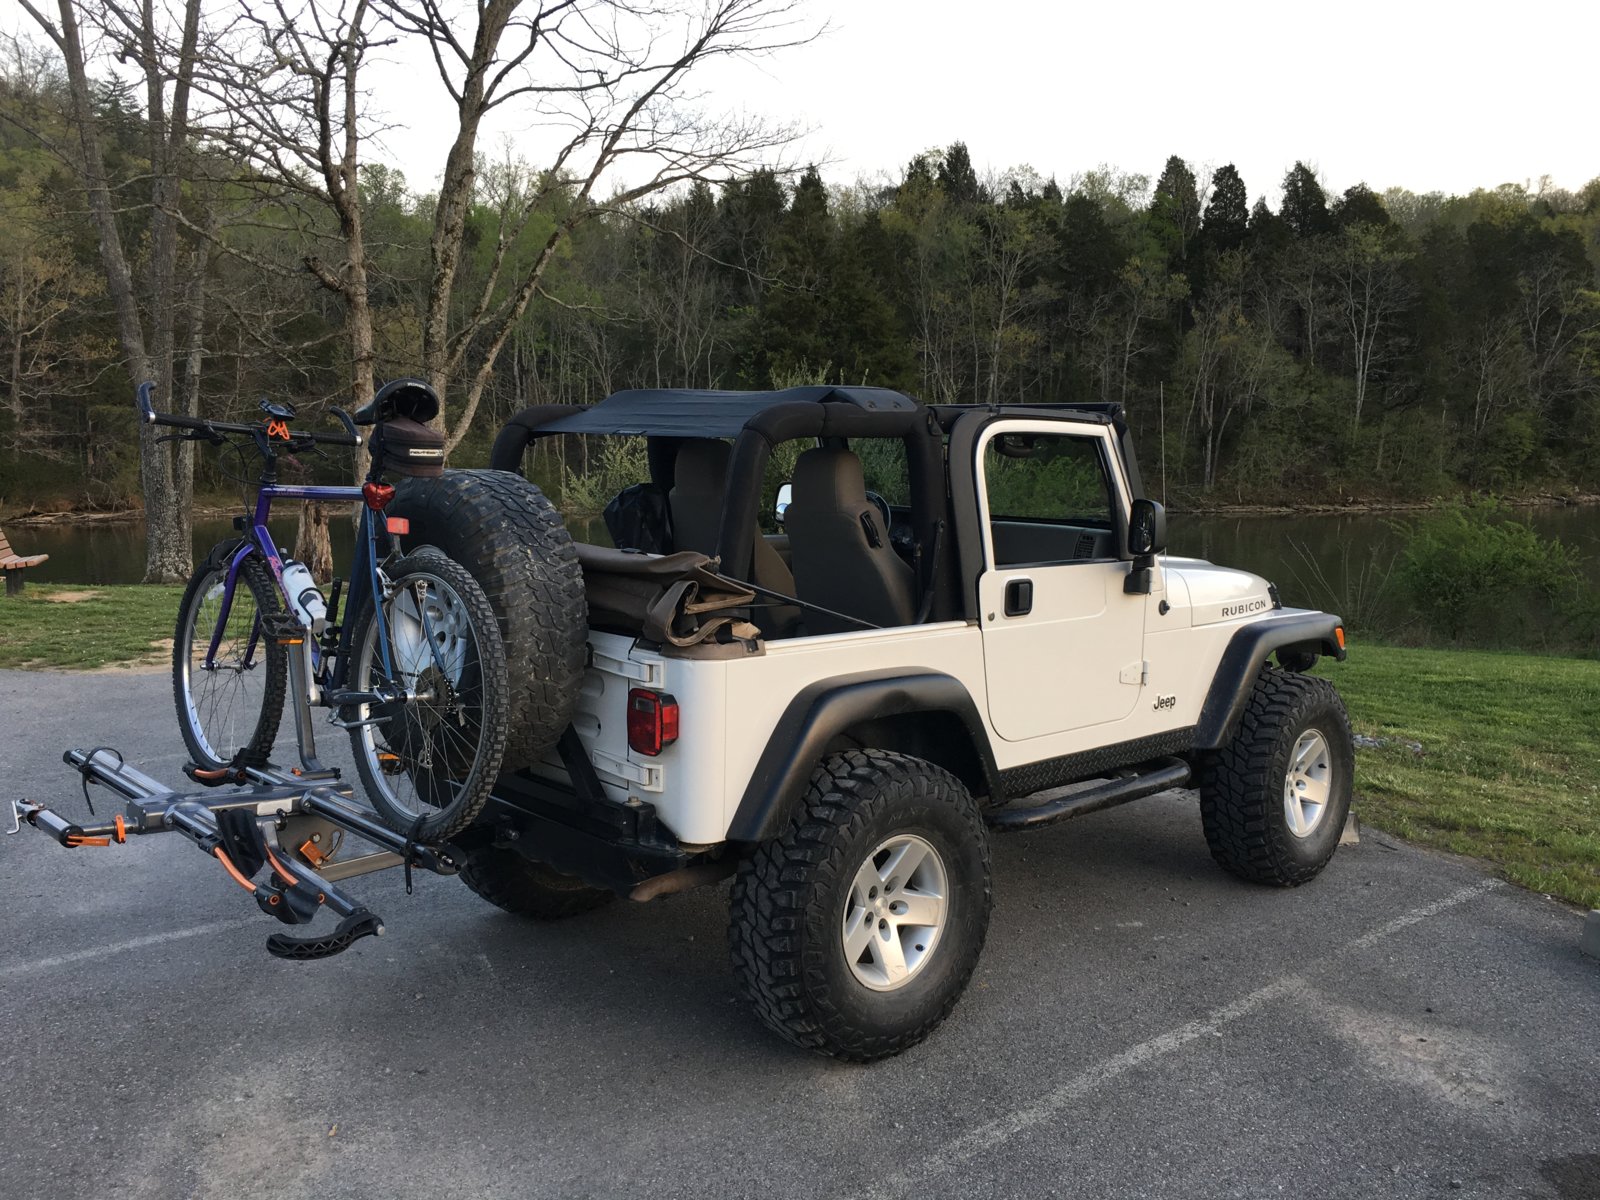 best bike rack for jeep wrangler